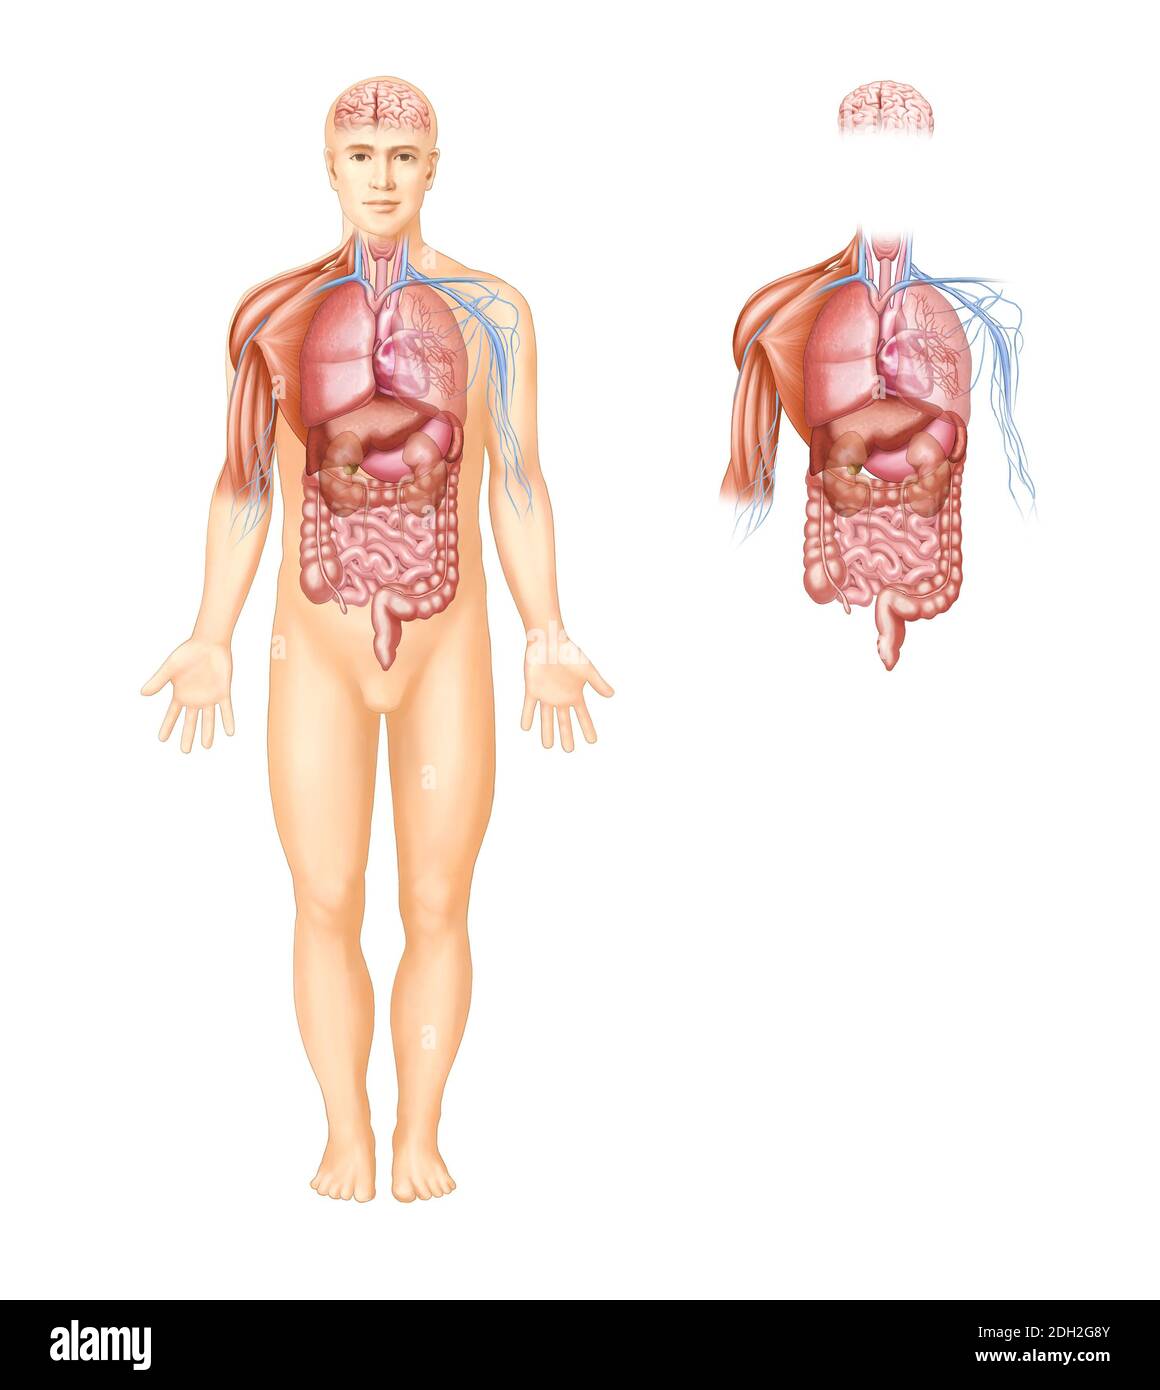 Anatomische Illustrationen von Organen, Muskeln und Nerven im menschlichen Körper Stockfoto